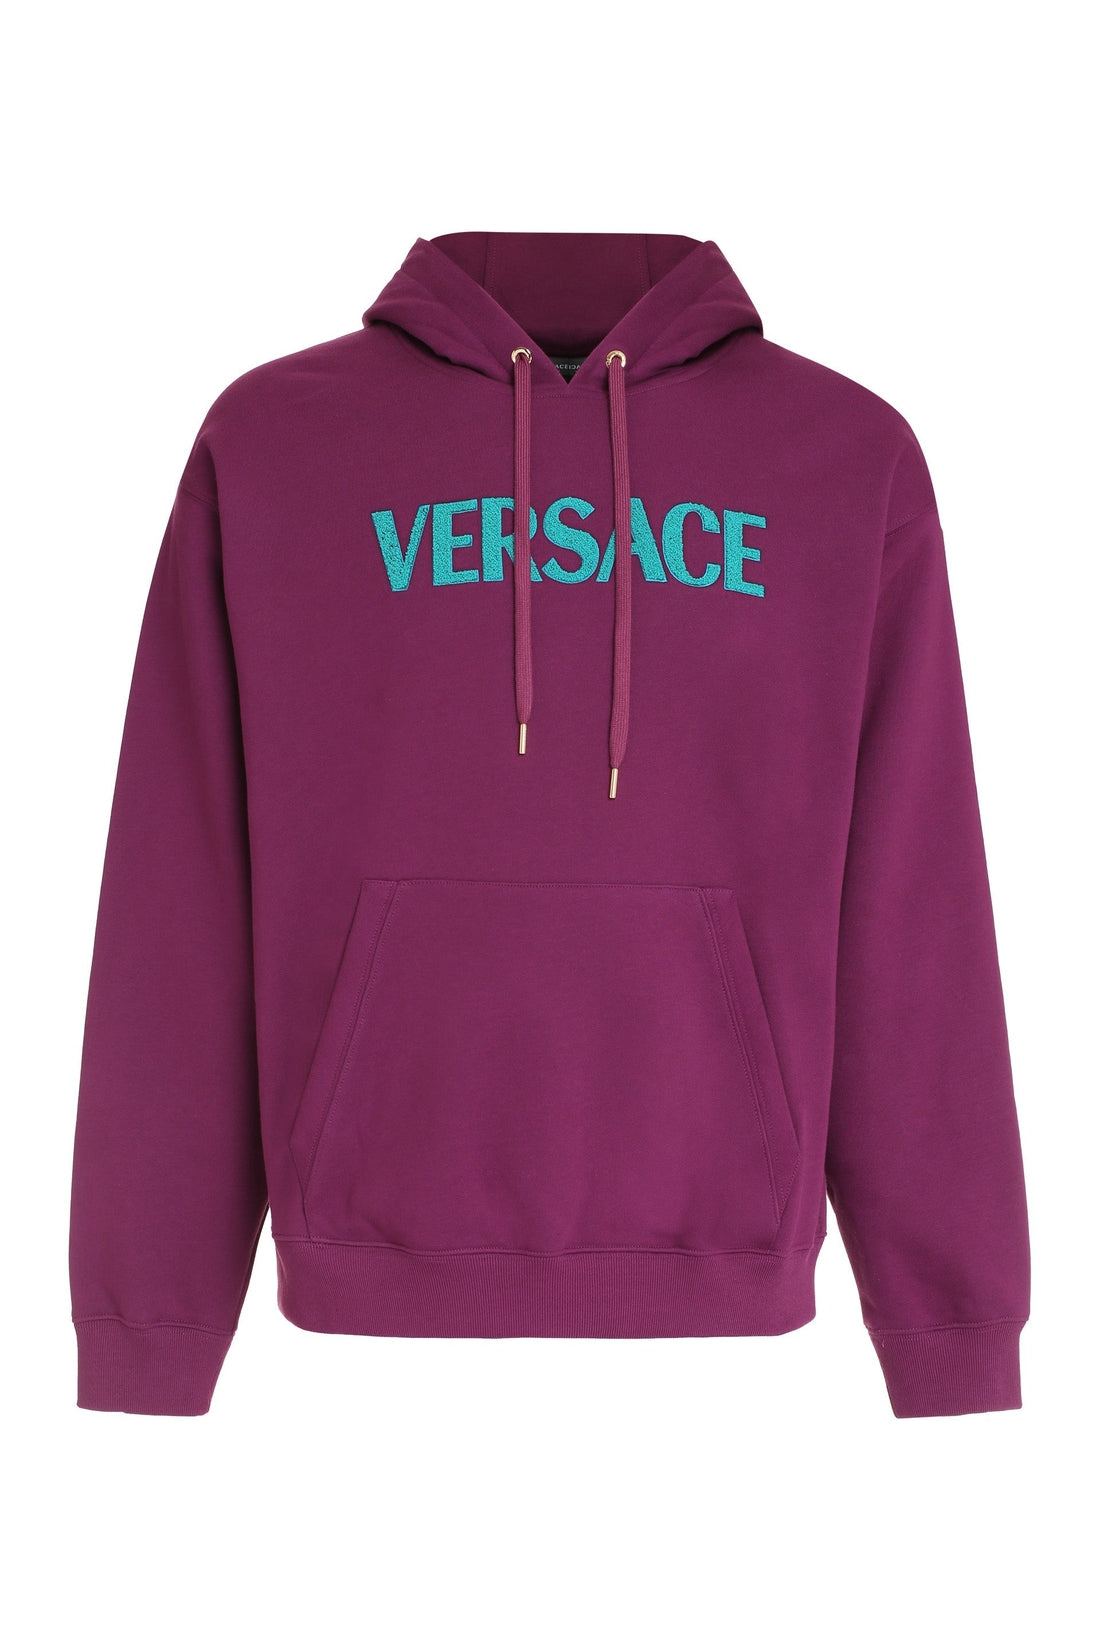 Versace-OUTLET-SALE-Logo detail cotton sweatshirt-ARCHIVIST